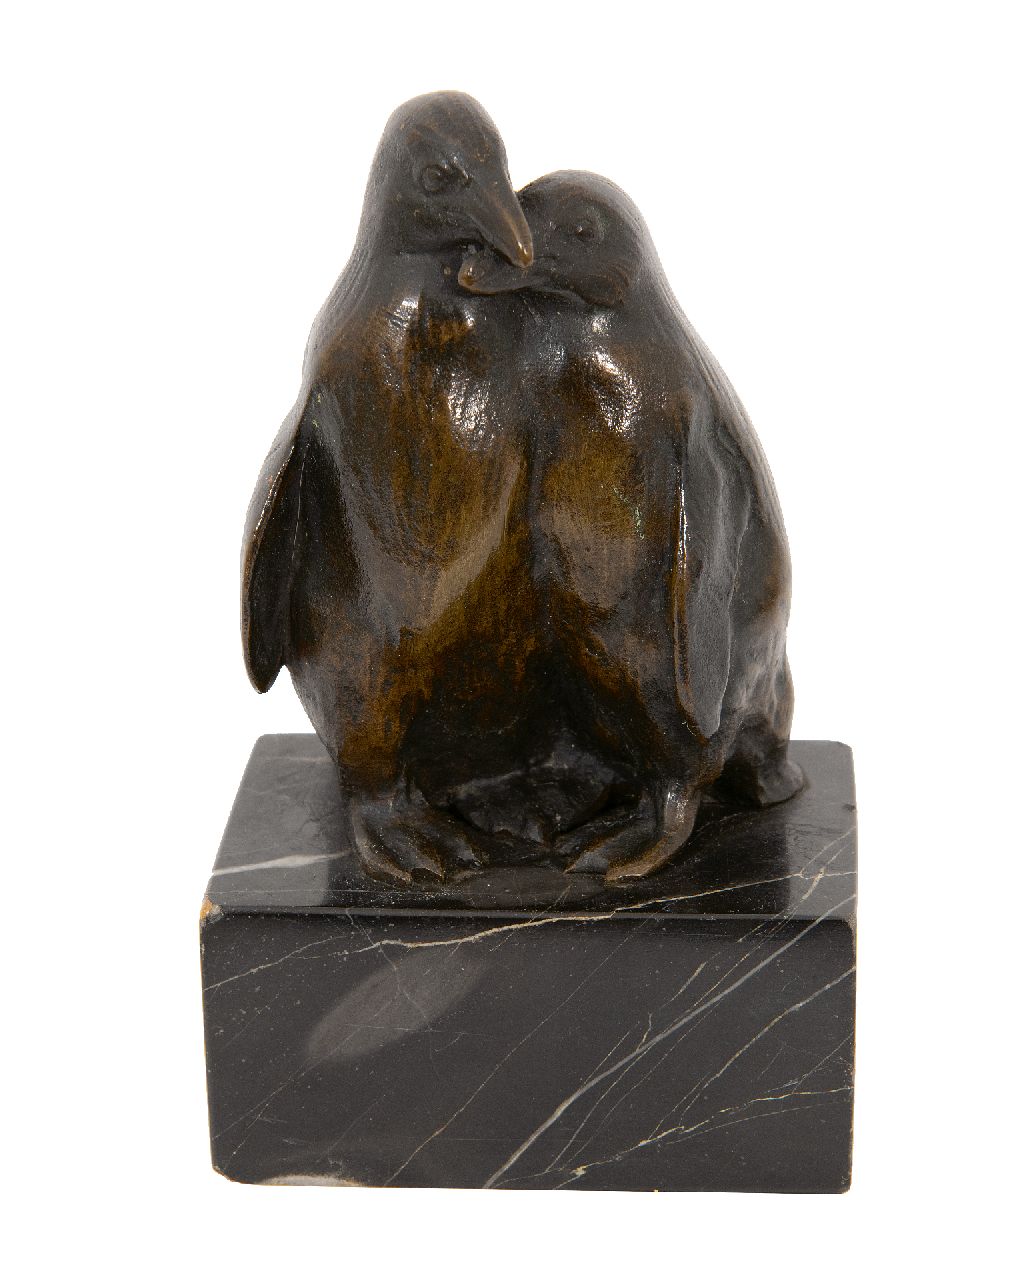 Pallenberg J.F.  | Josef Franz Pallenberg | Beelden en objecten te koop aangeboden | Liefkozende pinguïns, brons 10,0 x 6,5 cm